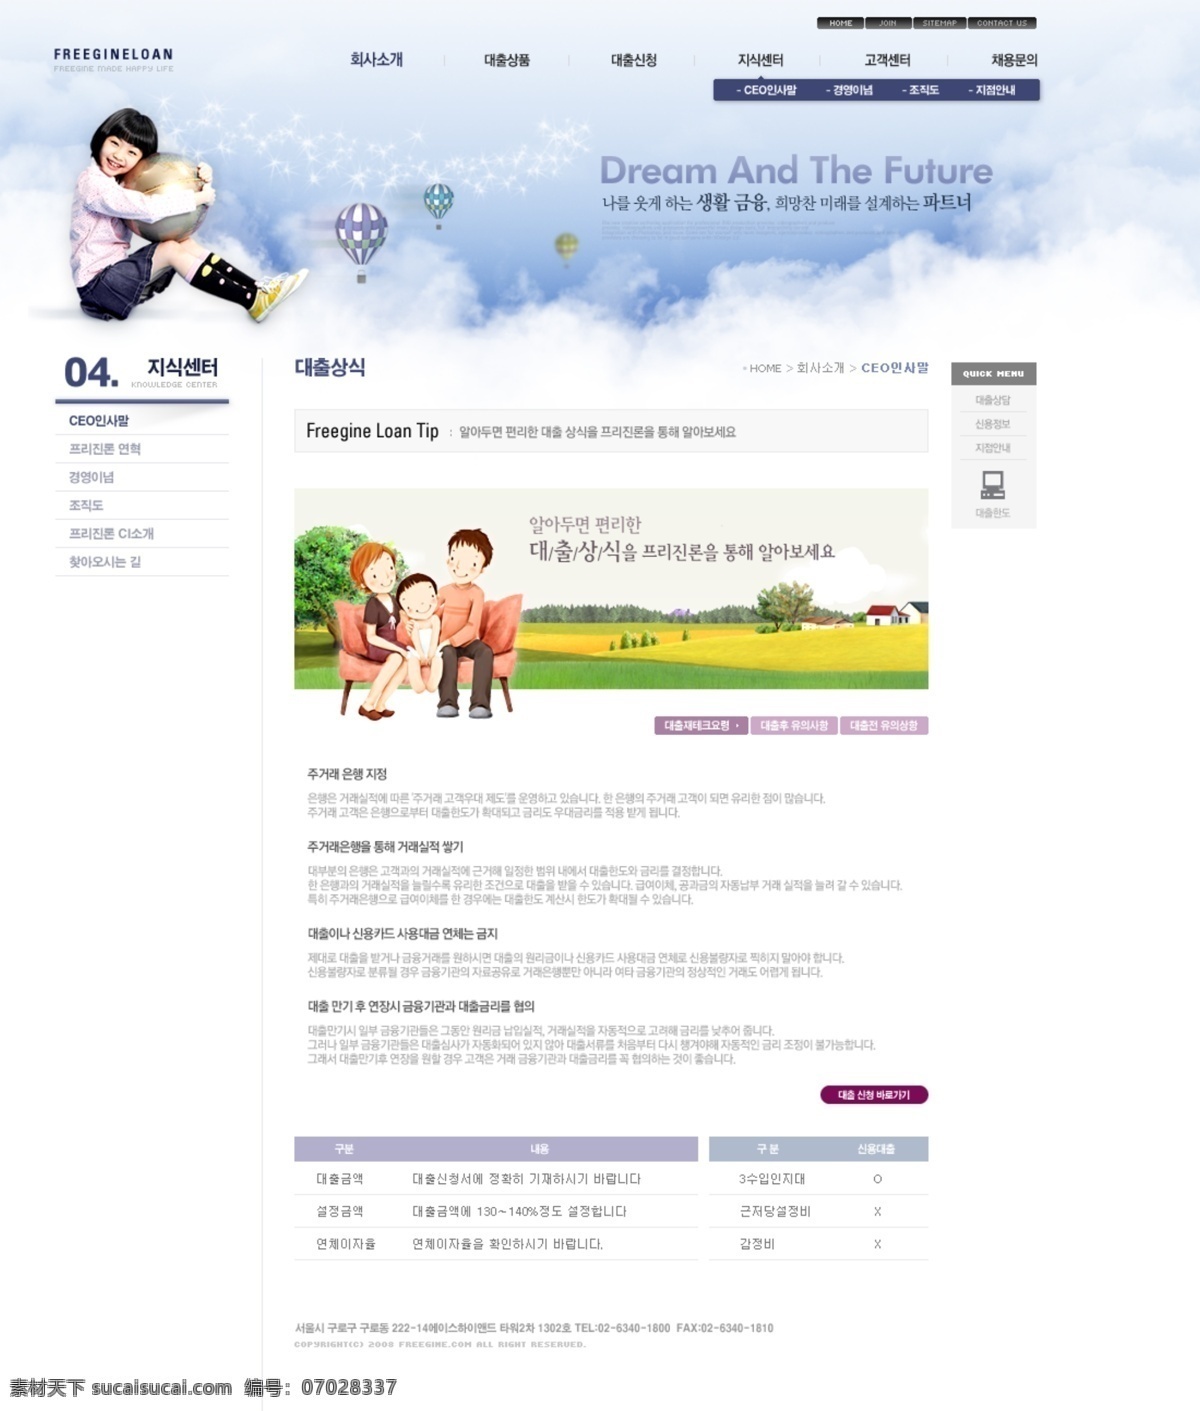 儿童 床 网页模板 psd格式 psd素材 儿童网页模板 韩国网站 网页素材